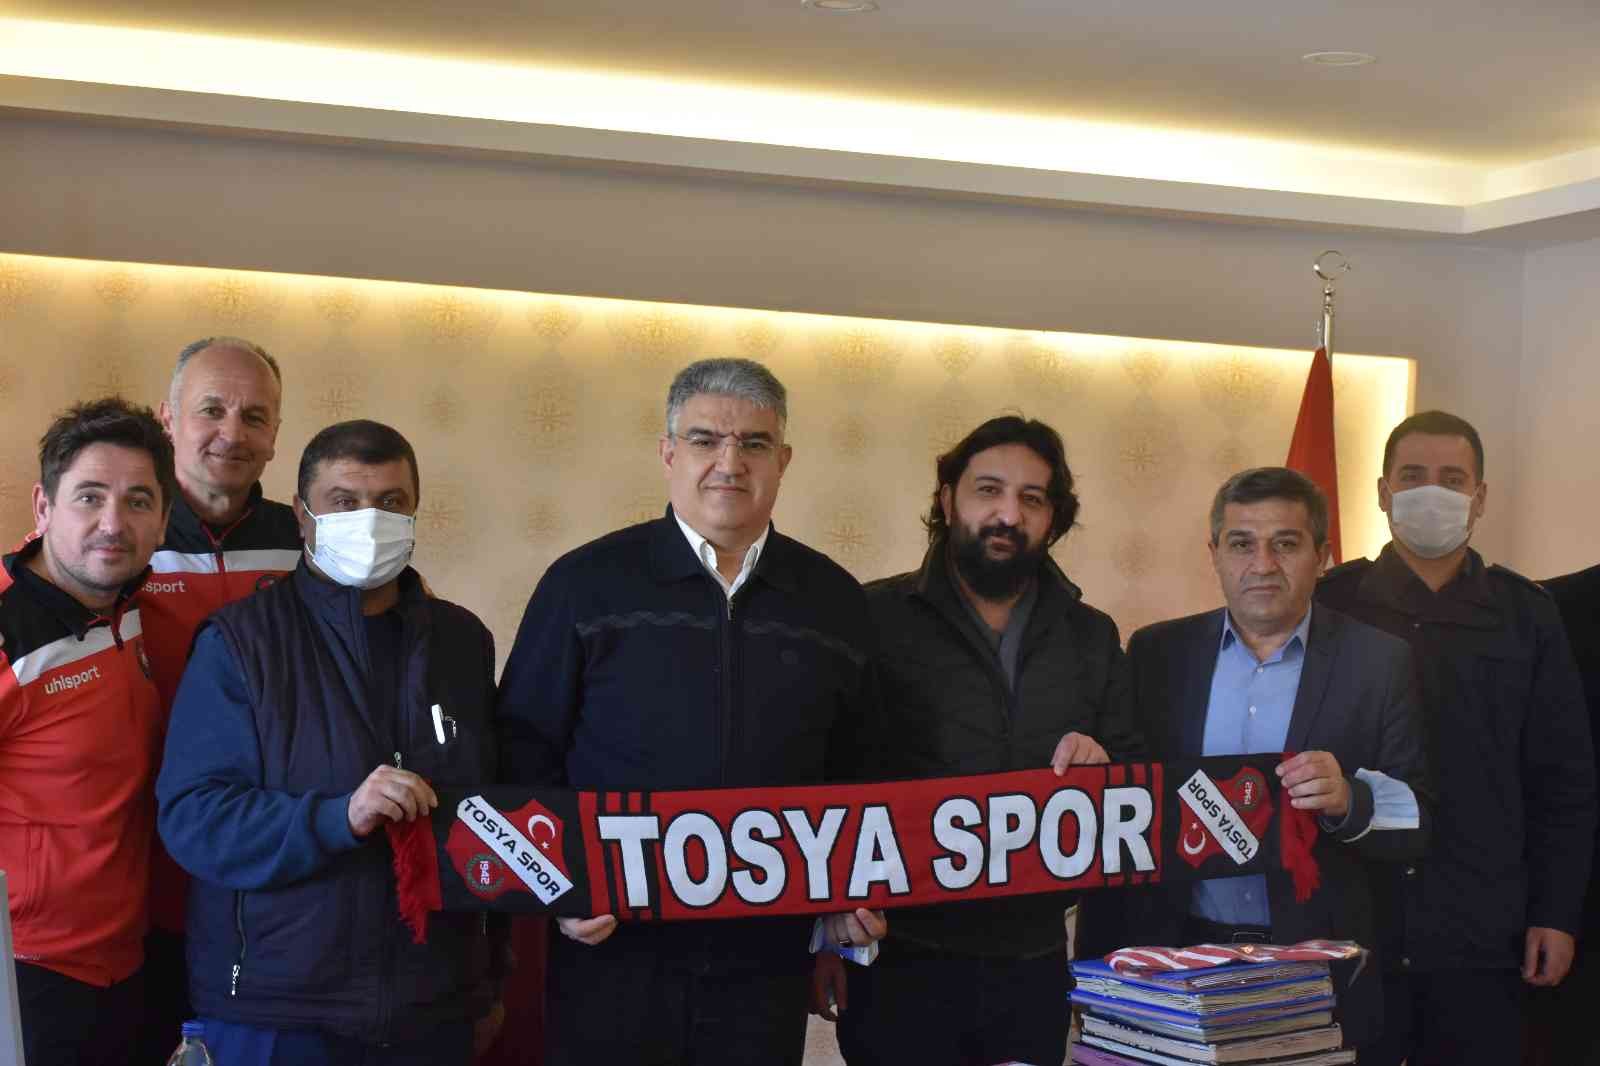 Tosyaspor, Kaymakam Özen’i maça davet etti #kastamonu